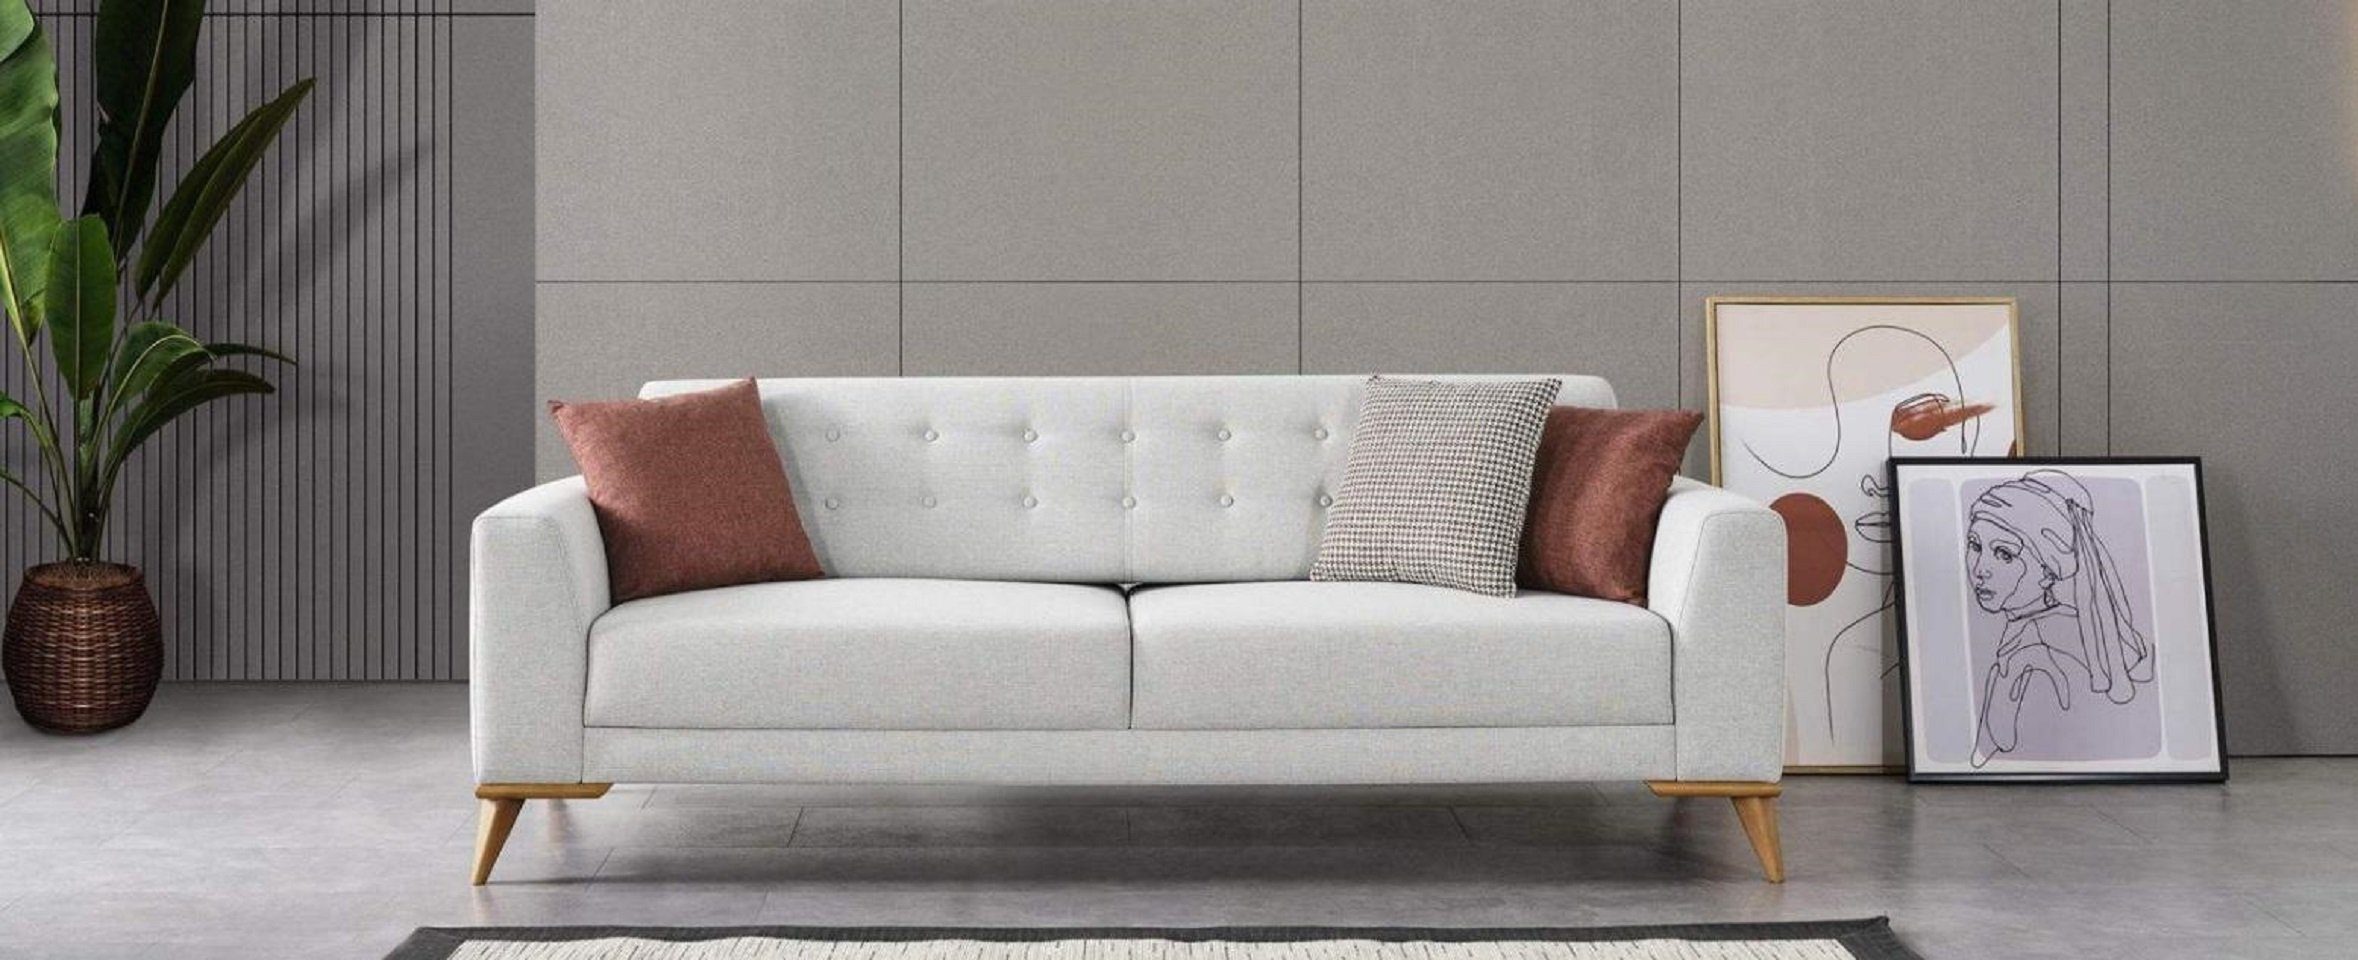 JVmoebel 3-Sitzer Luxus Sofa 3 Sitzer Design Möbel Stilvoll Wohnzimmer Dreisitzer Couch, 1 Teile, Made in Europe